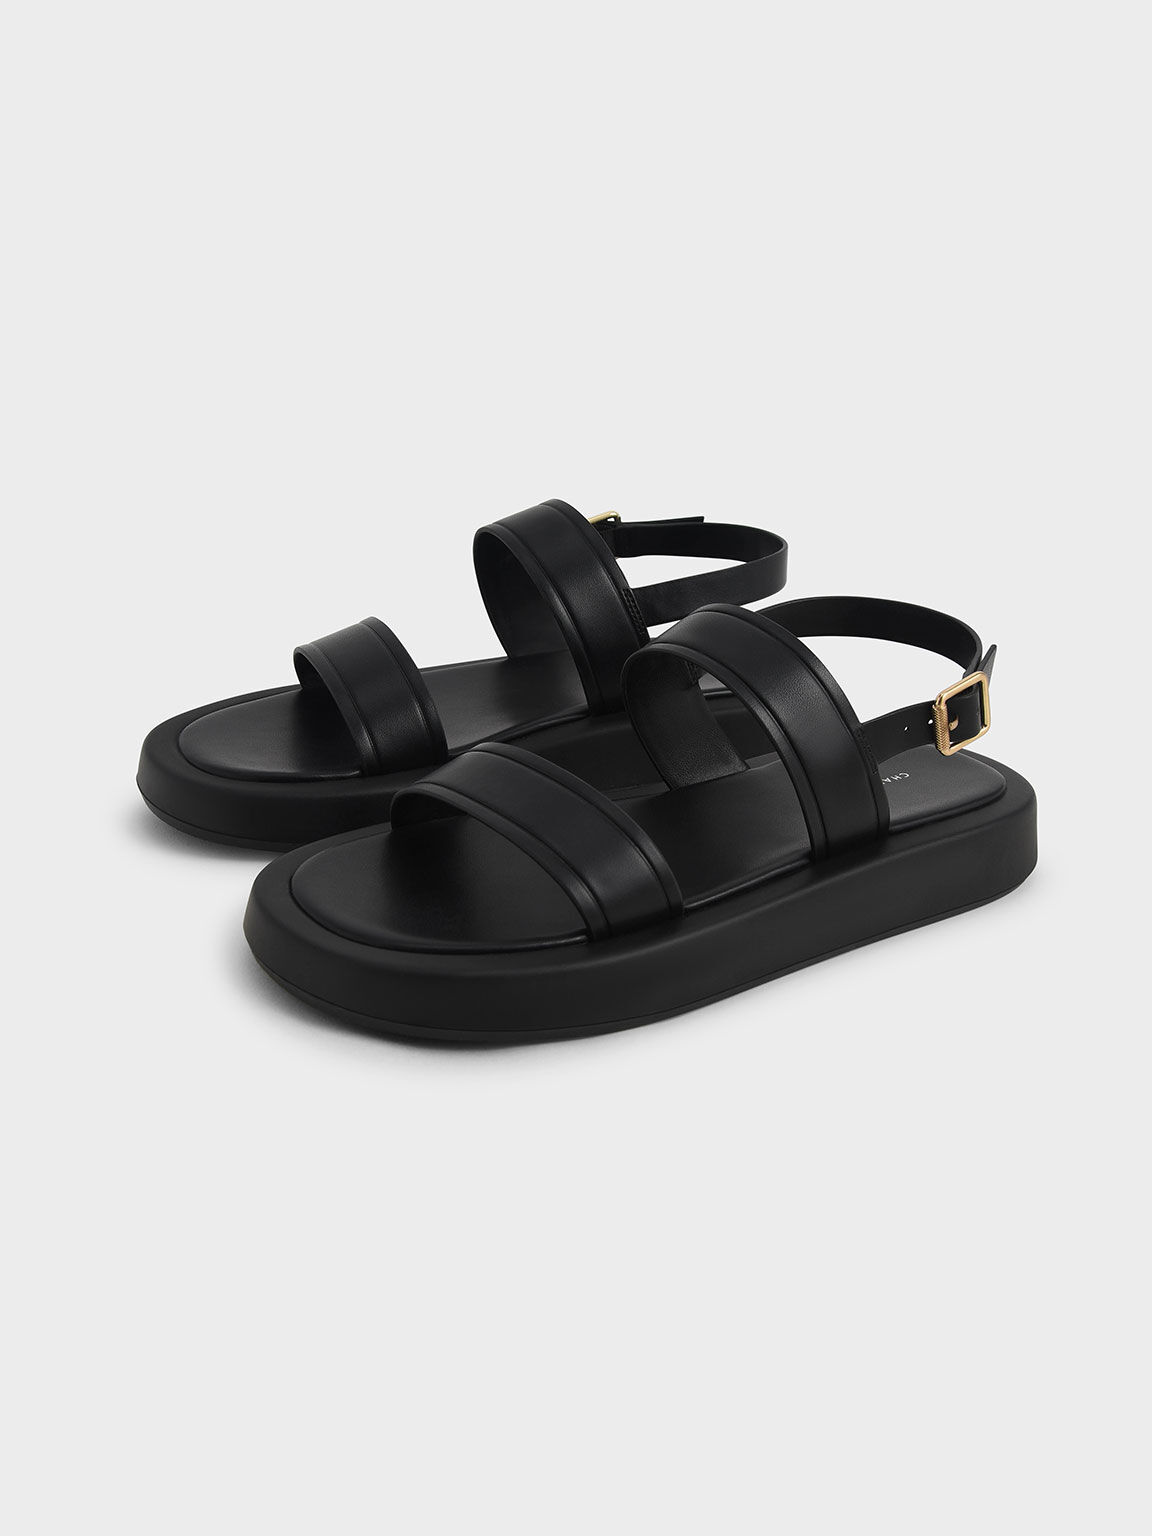 Black Open Toe Slingback Platform Sandals - CHARLES & KEITH UK